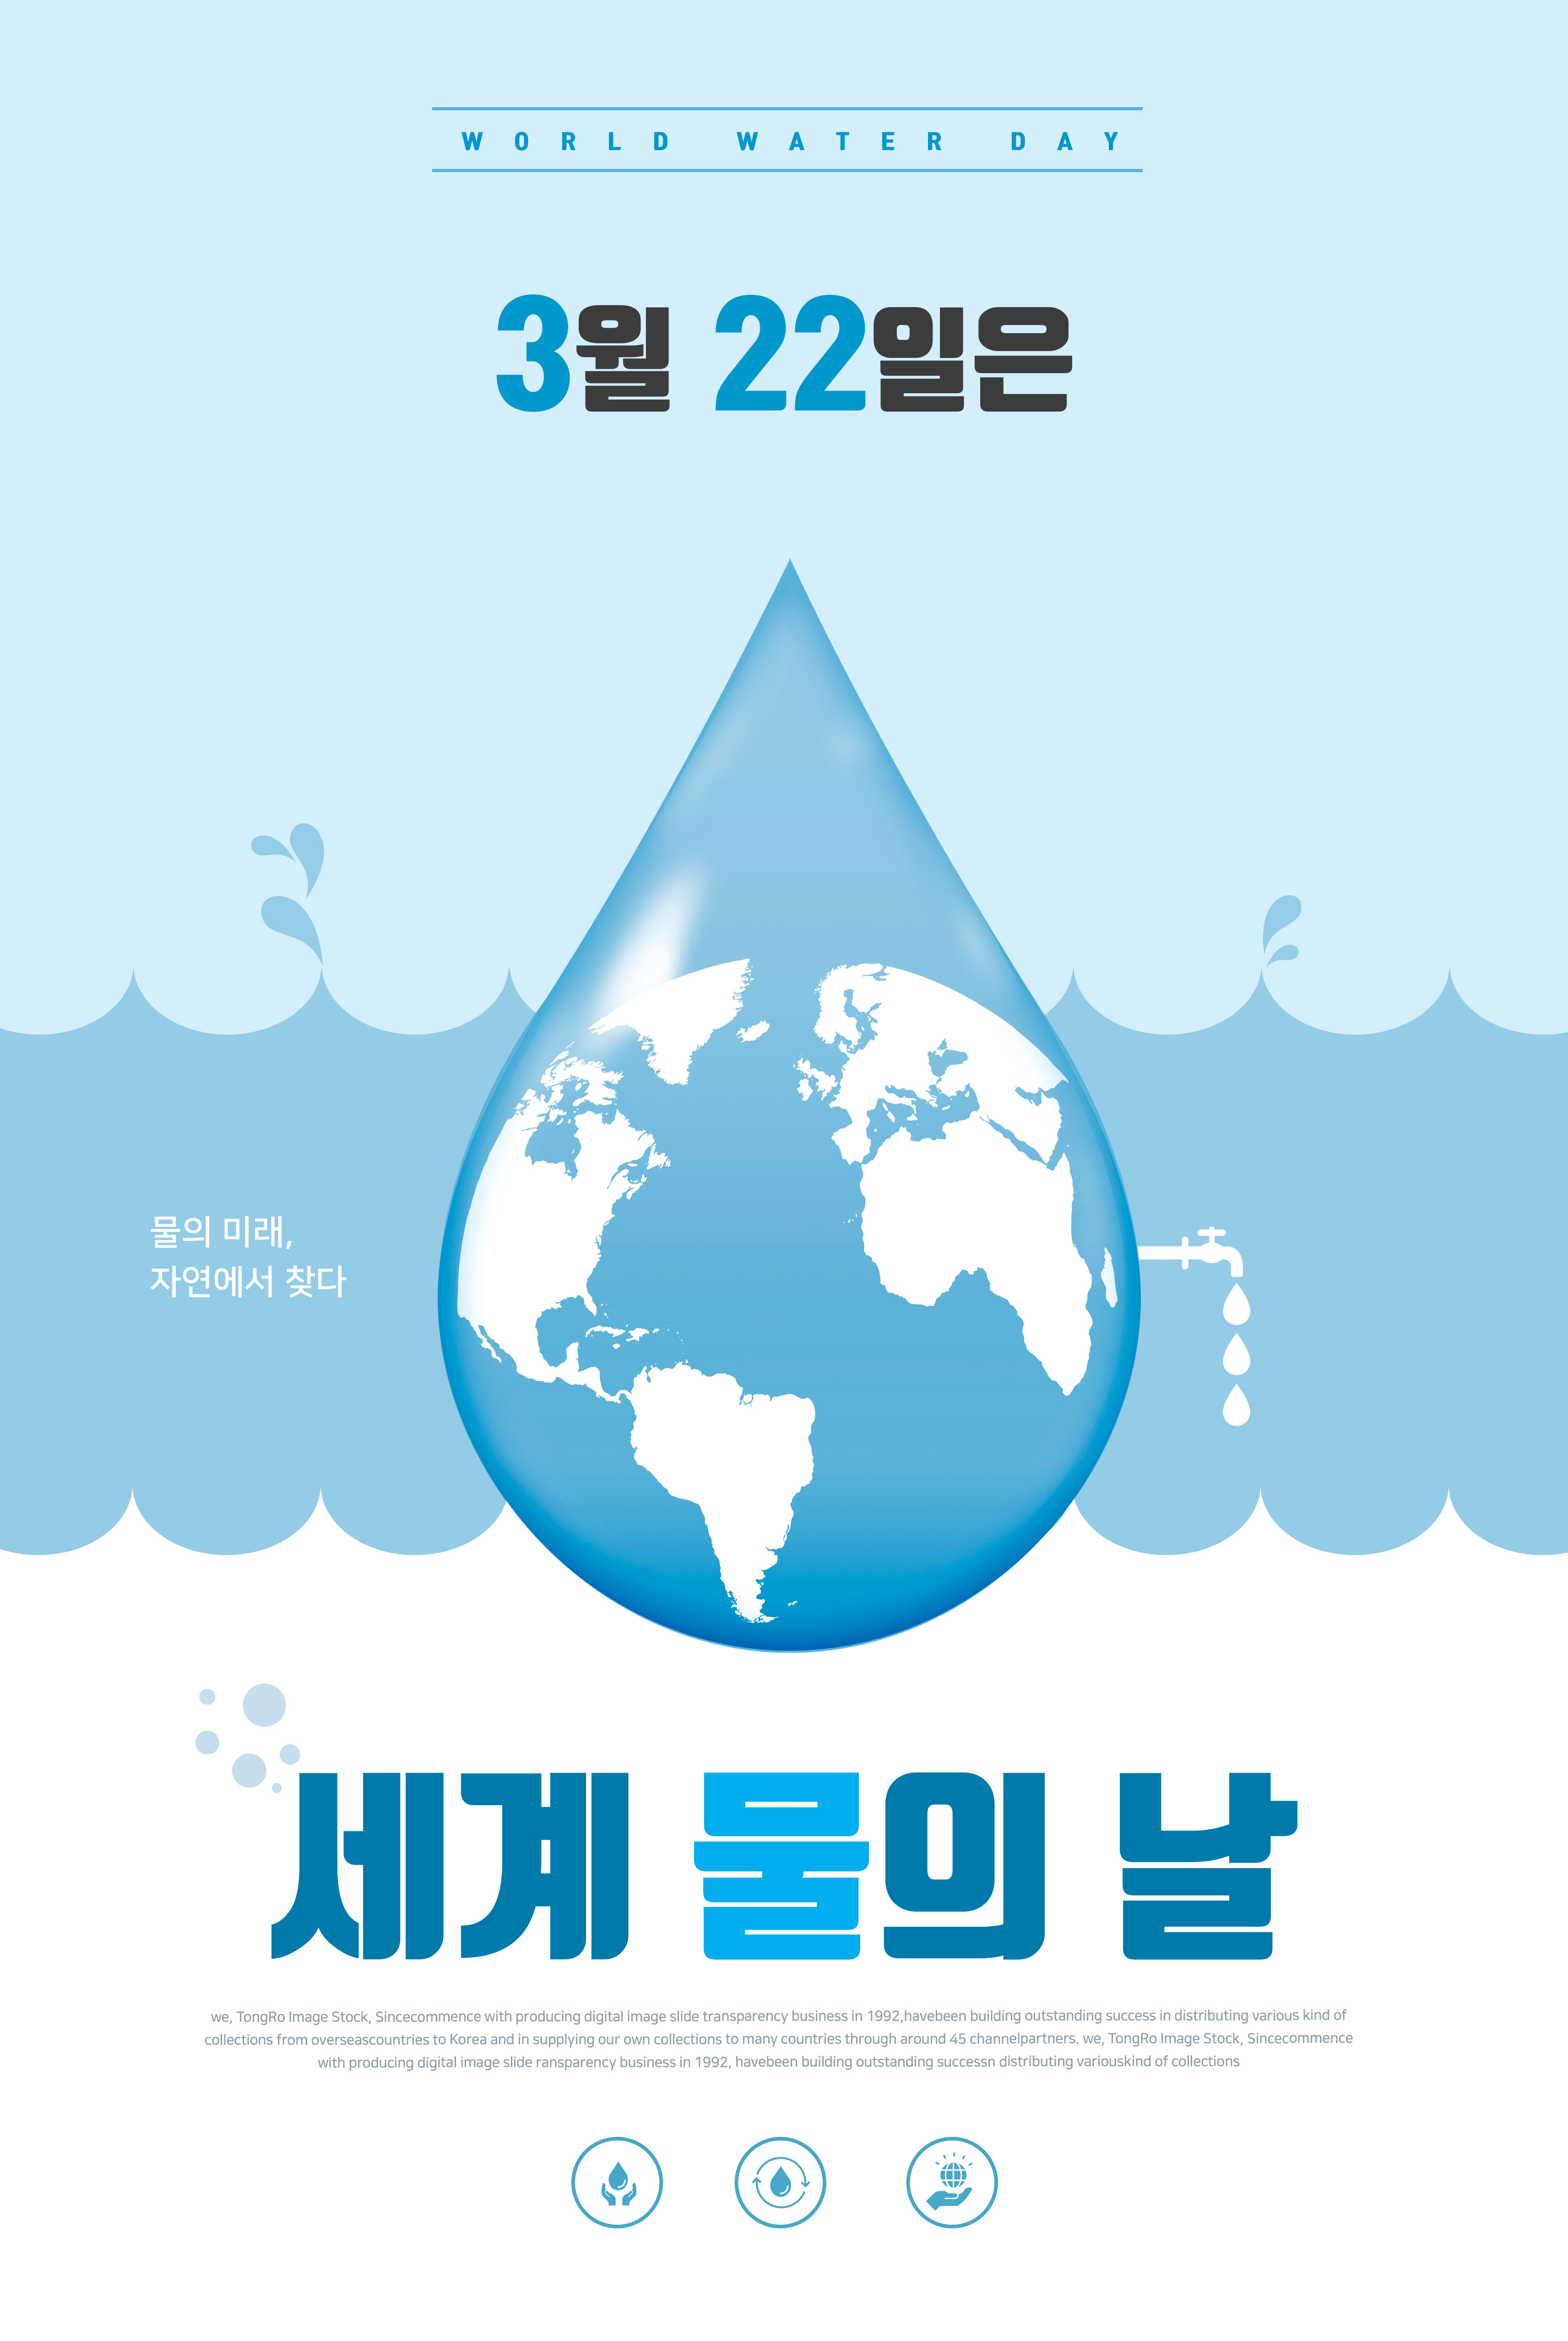 世界节水日水资源保护主题海报PSD素材素材库精选韩国素材插图